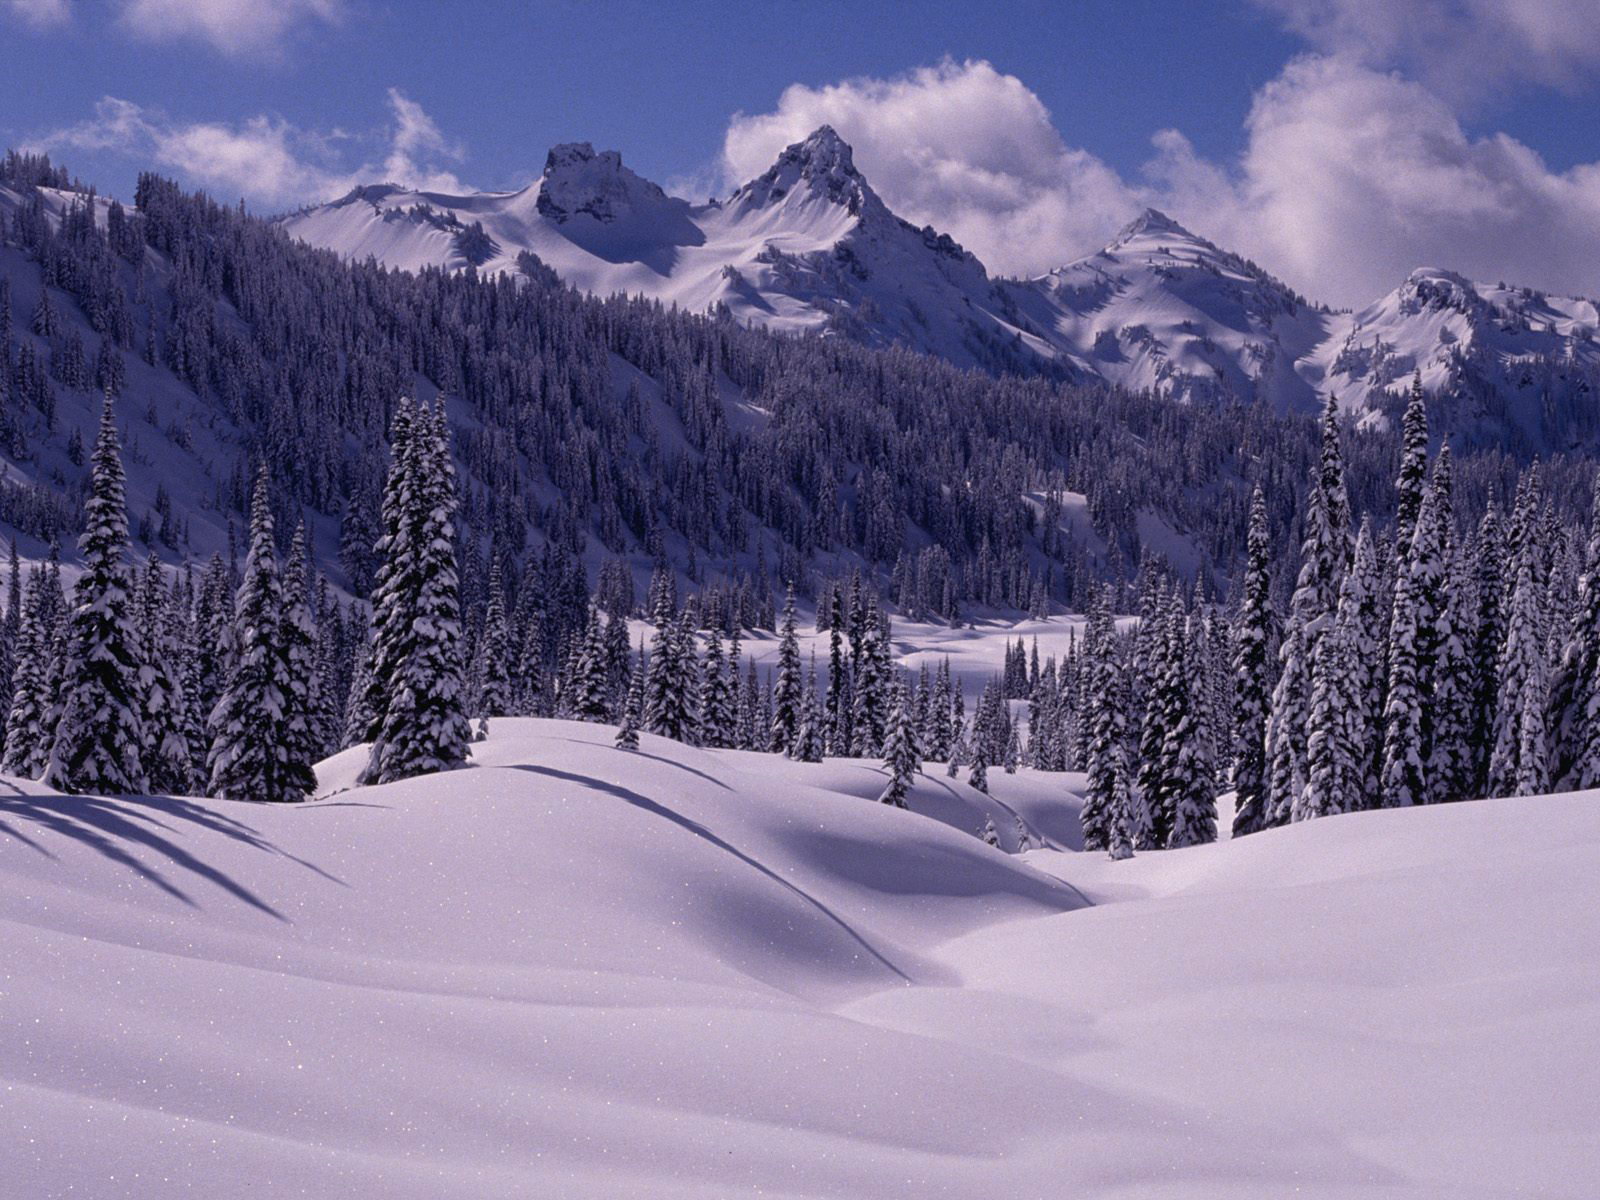 冰天雪地唯美好看的雪中美景唯美图集桌面壁纸下载第一辑-风景壁纸-壁纸下载-美桌网